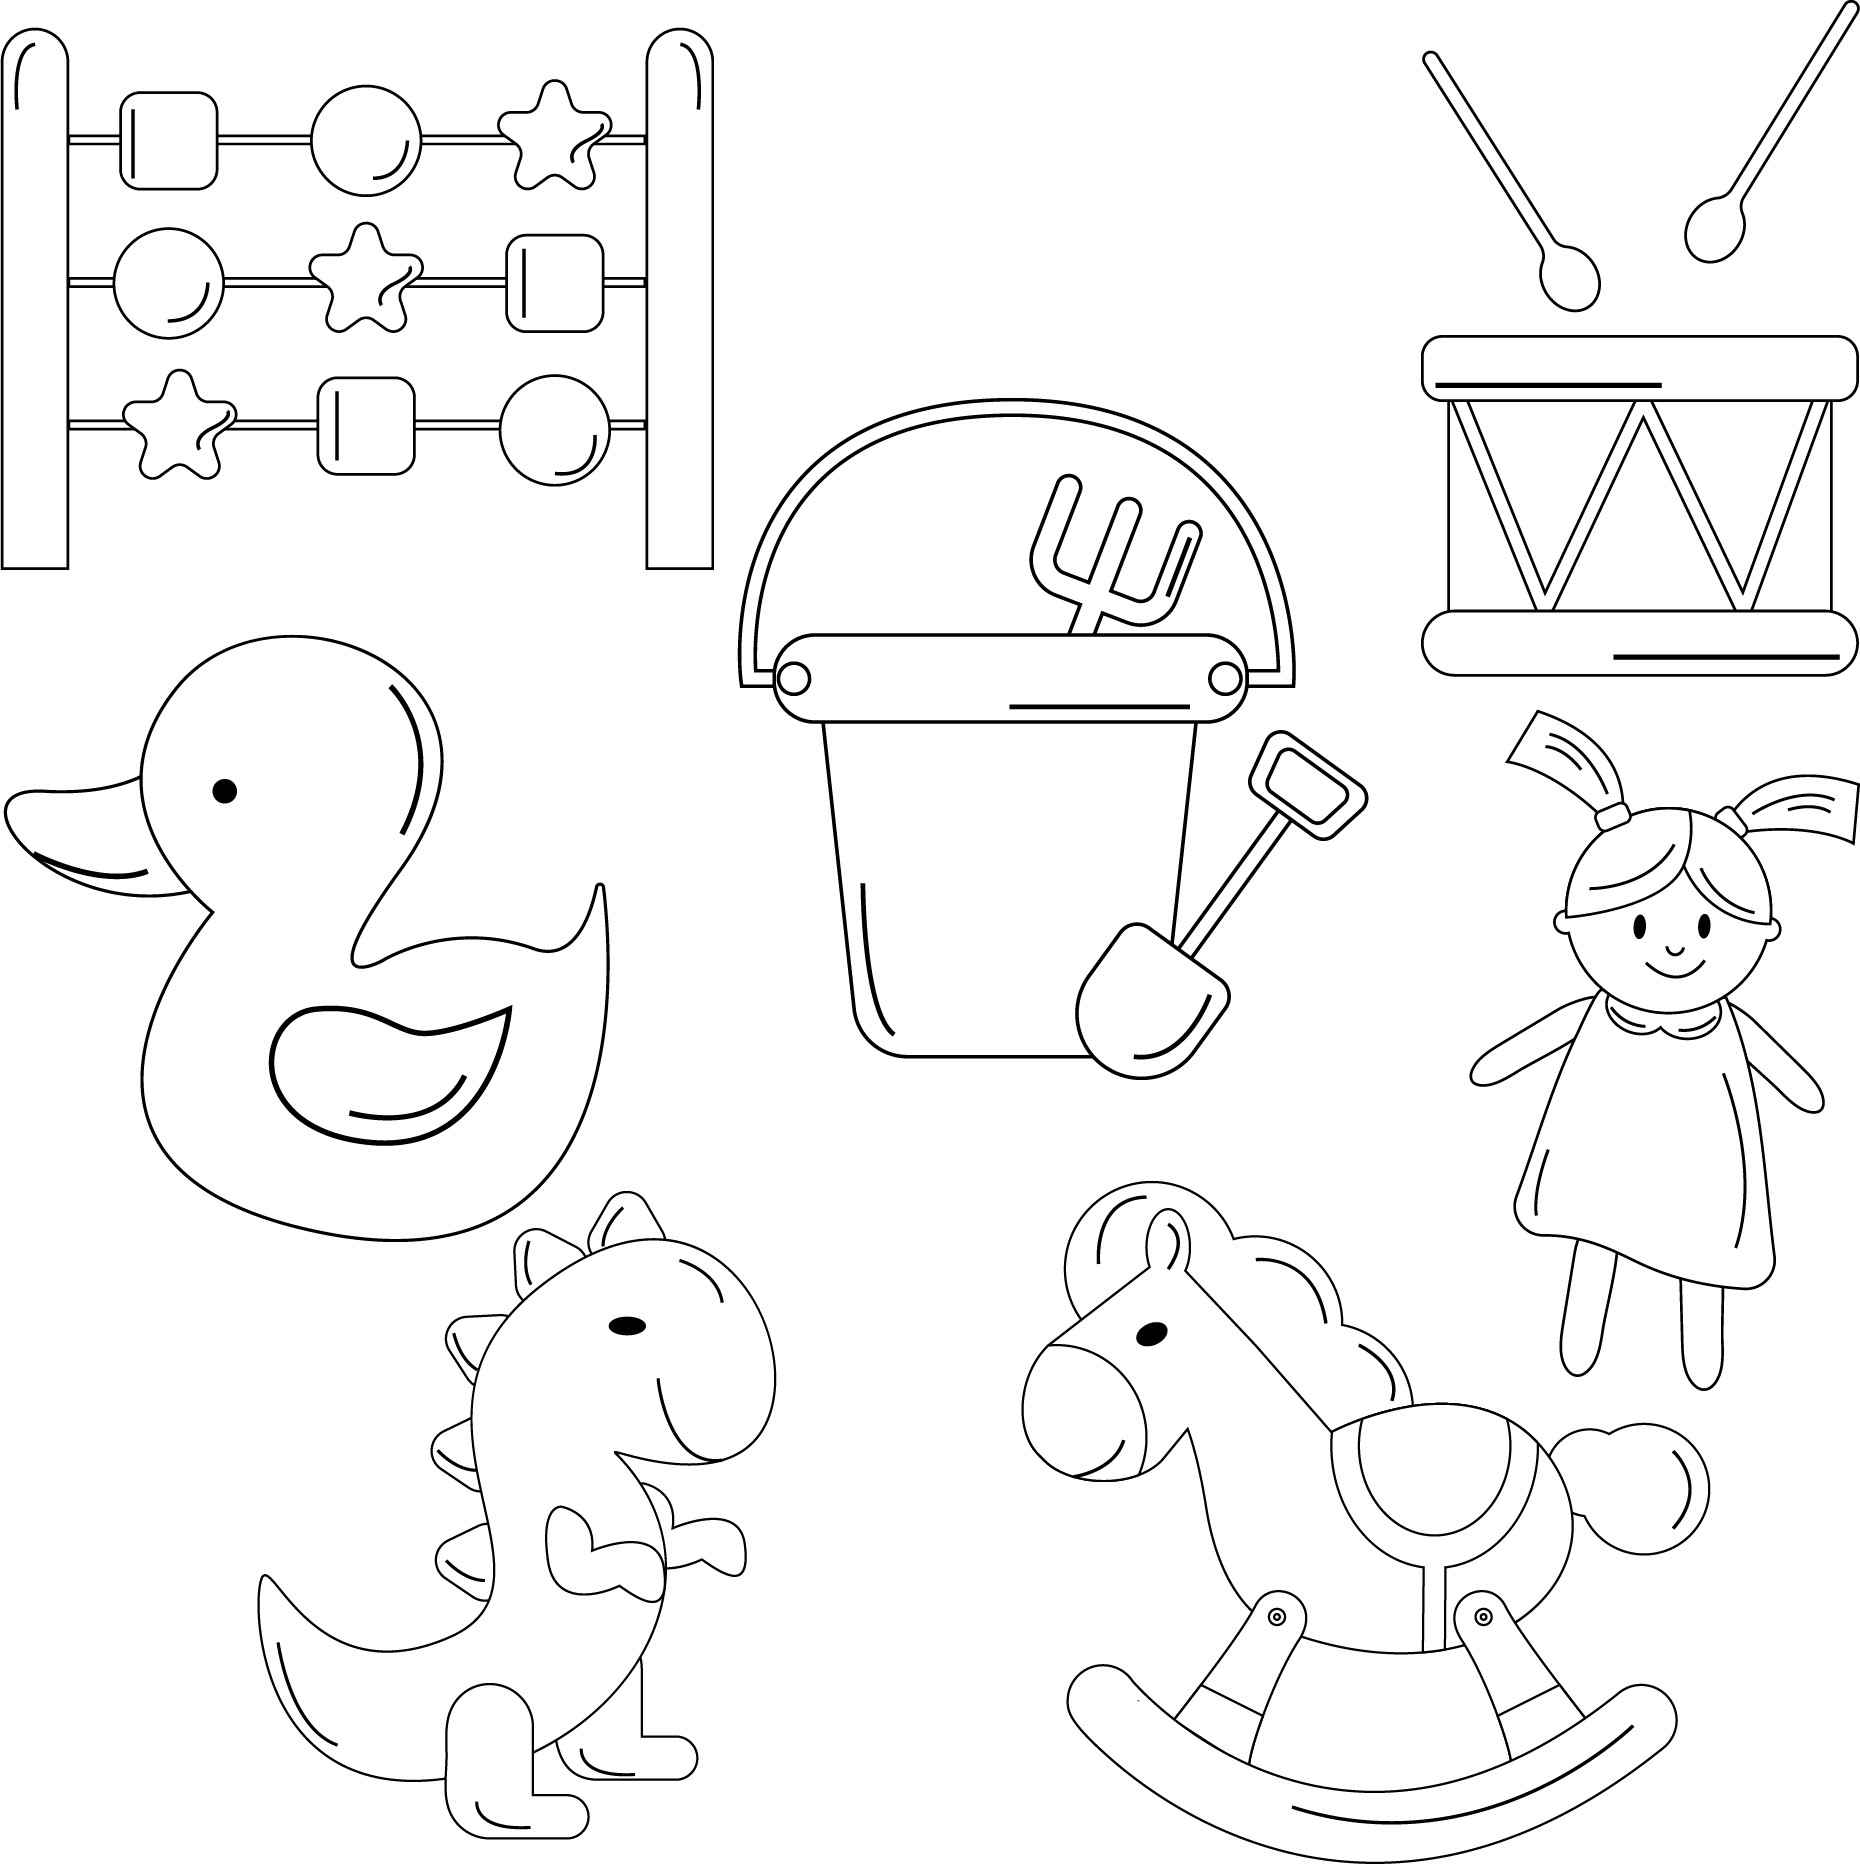 Раскраска для детей: набор детских игрушек: счеты, ведерко, барабан, кукла, уточка, динозаврик, лошадка